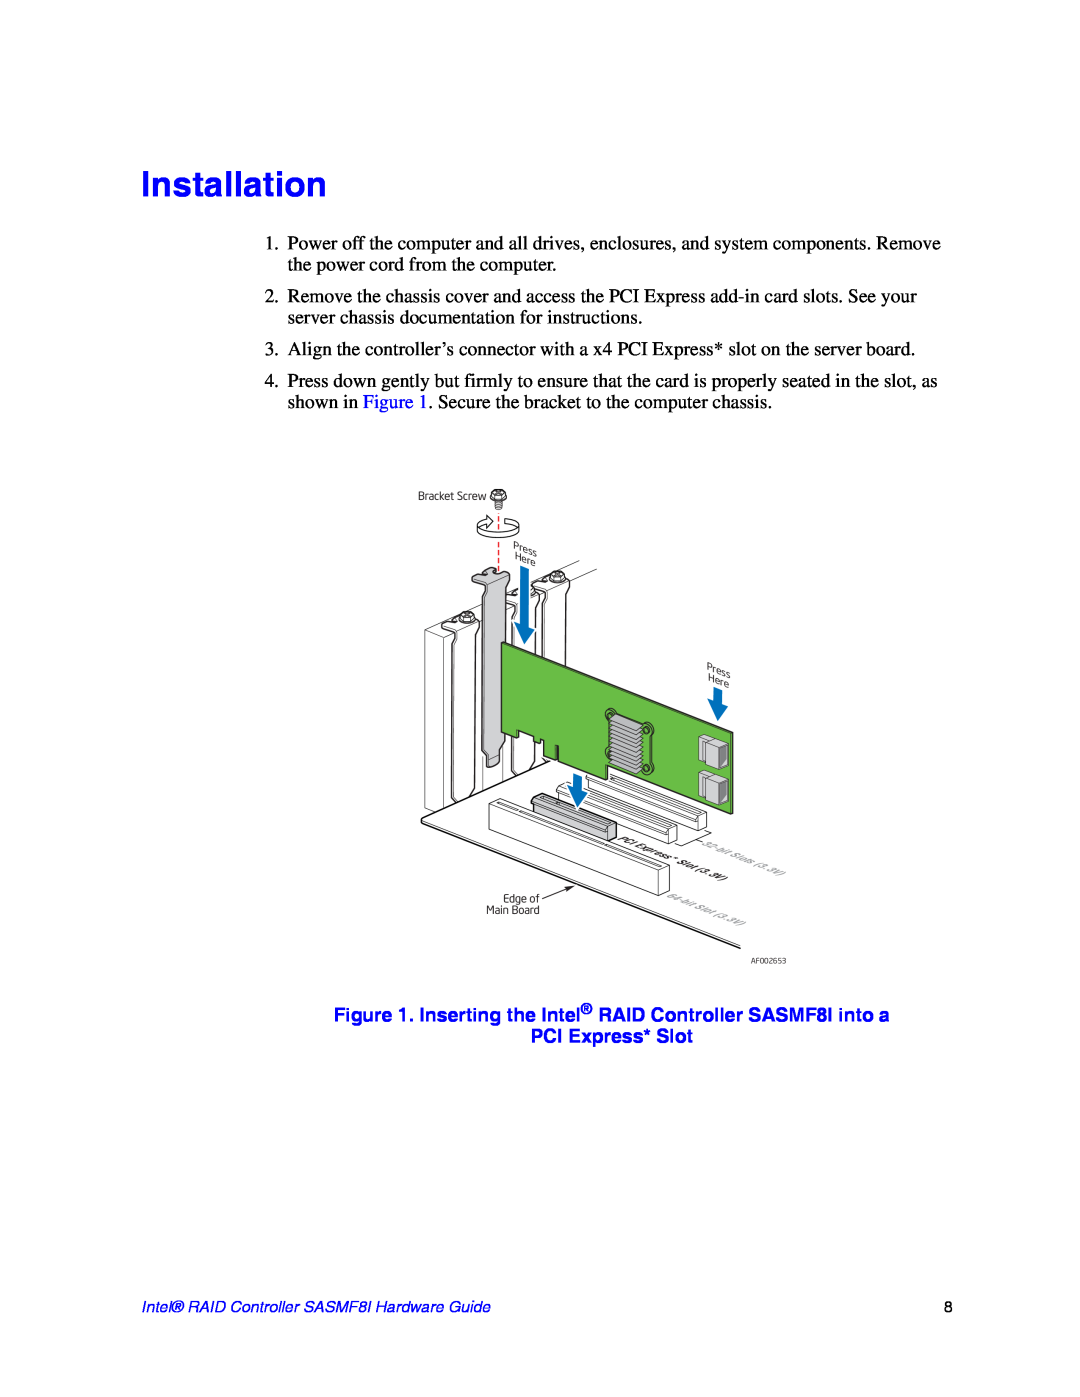 Intel SASMF8I manual Installation, PCI Express* Slot 